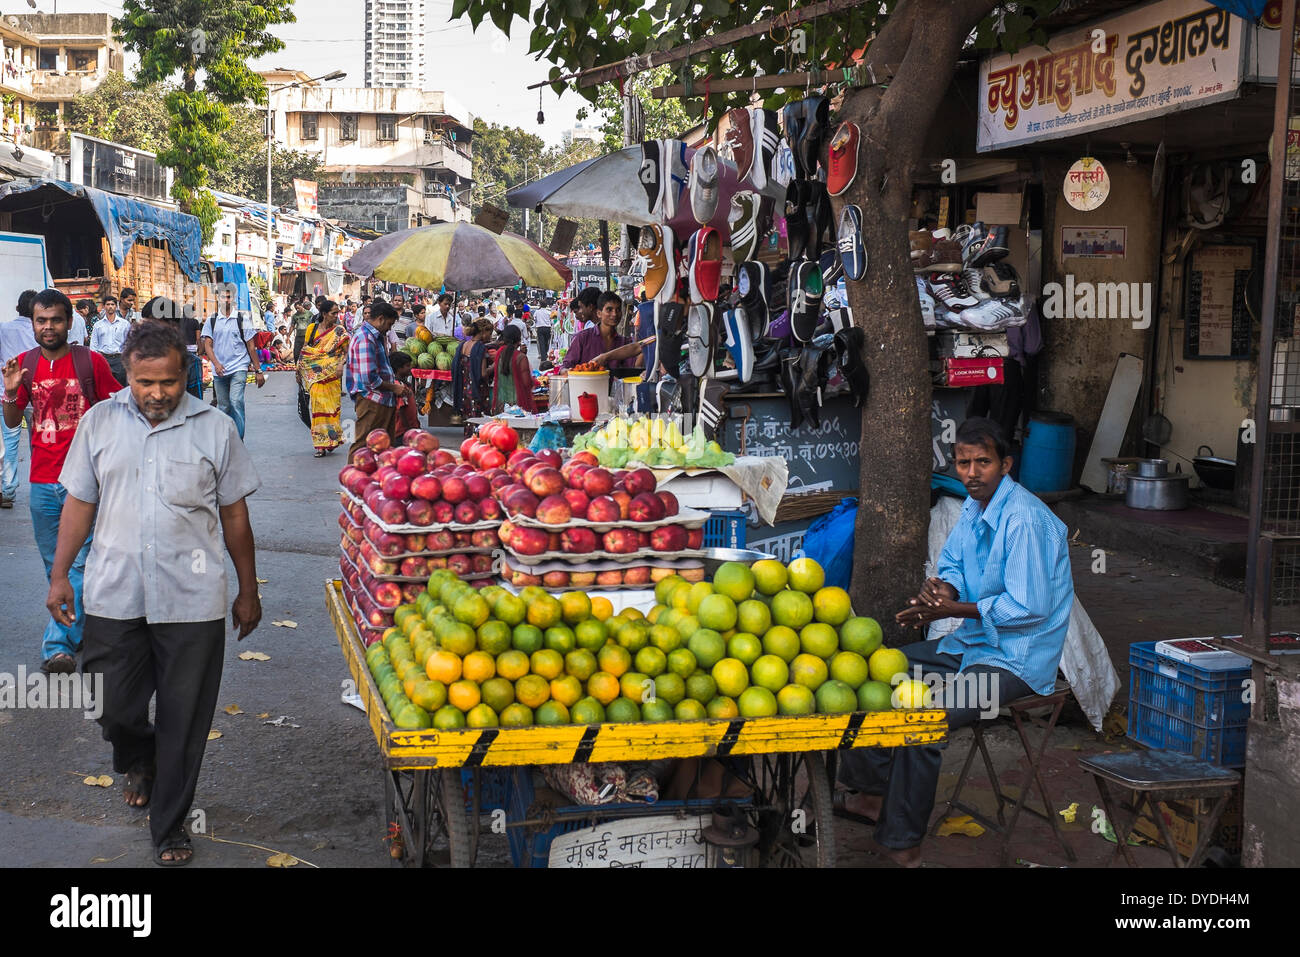 Ein Obsthändler tendenziell seinem Stall in einer geschäftigen Straße Markt. Stockfoto